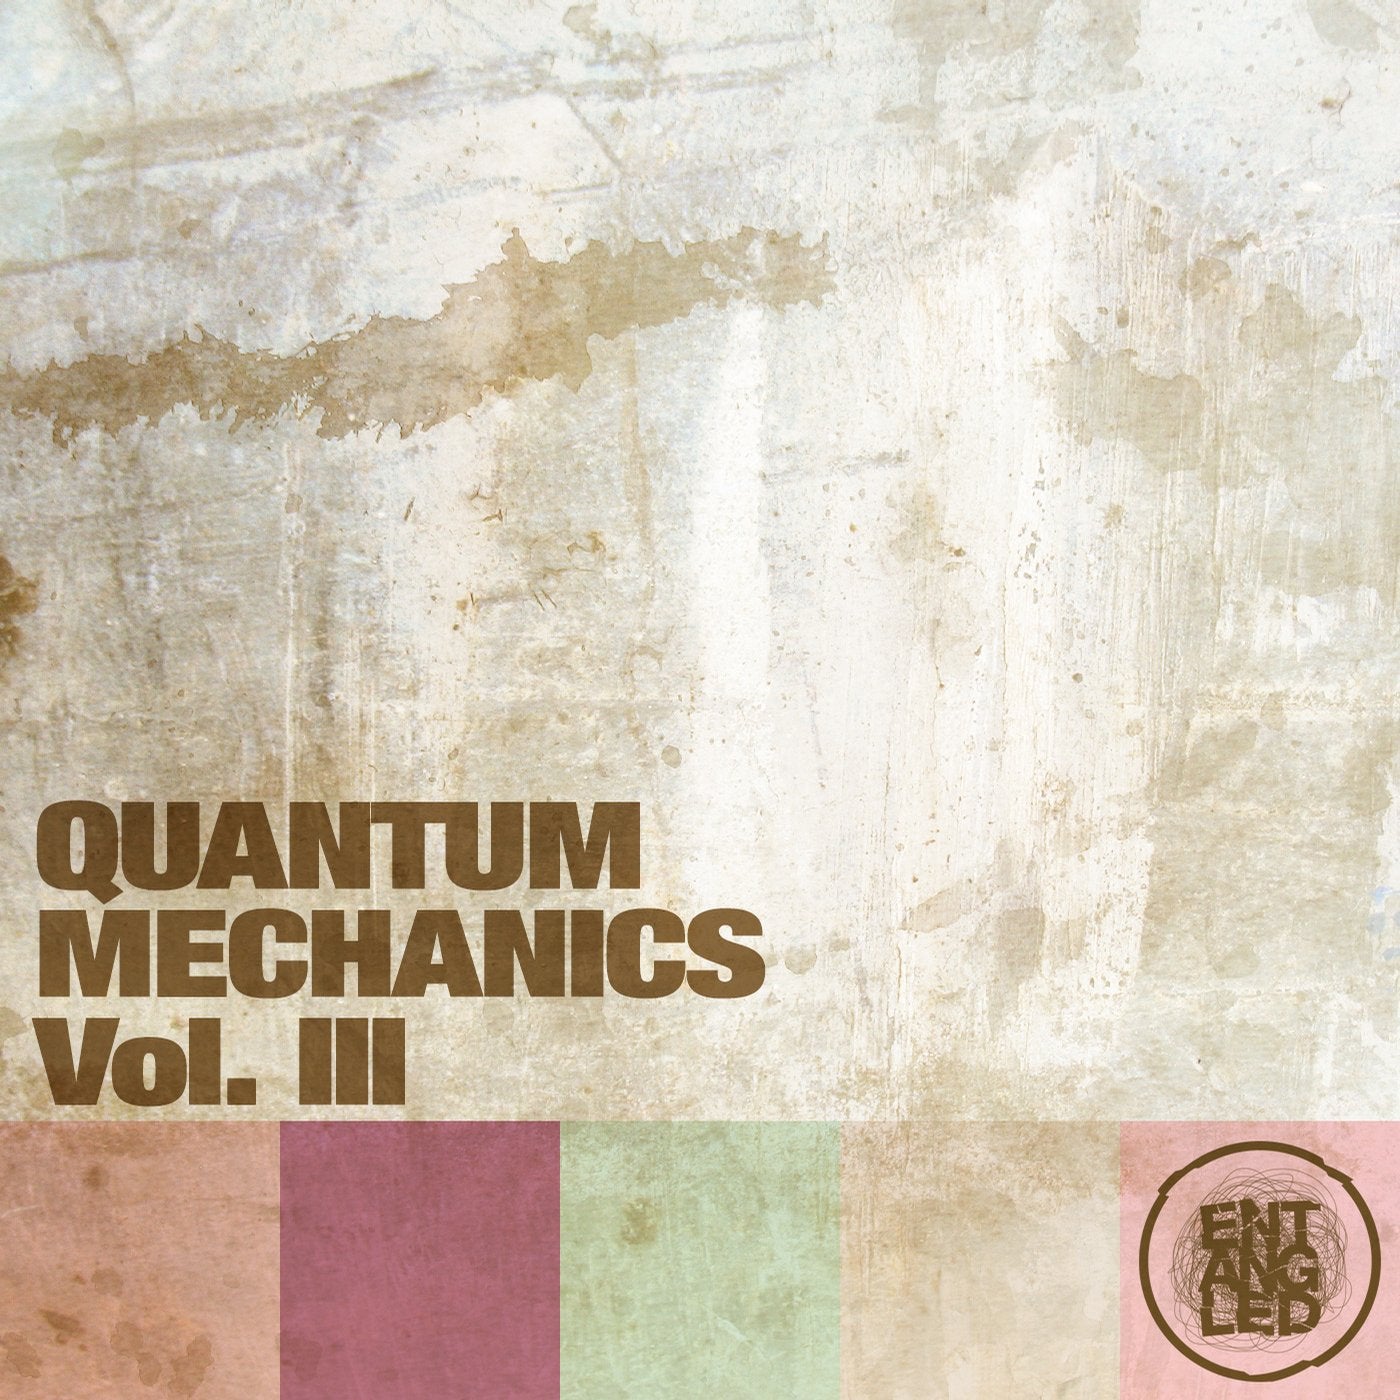 Quantum Mechanics Vol III